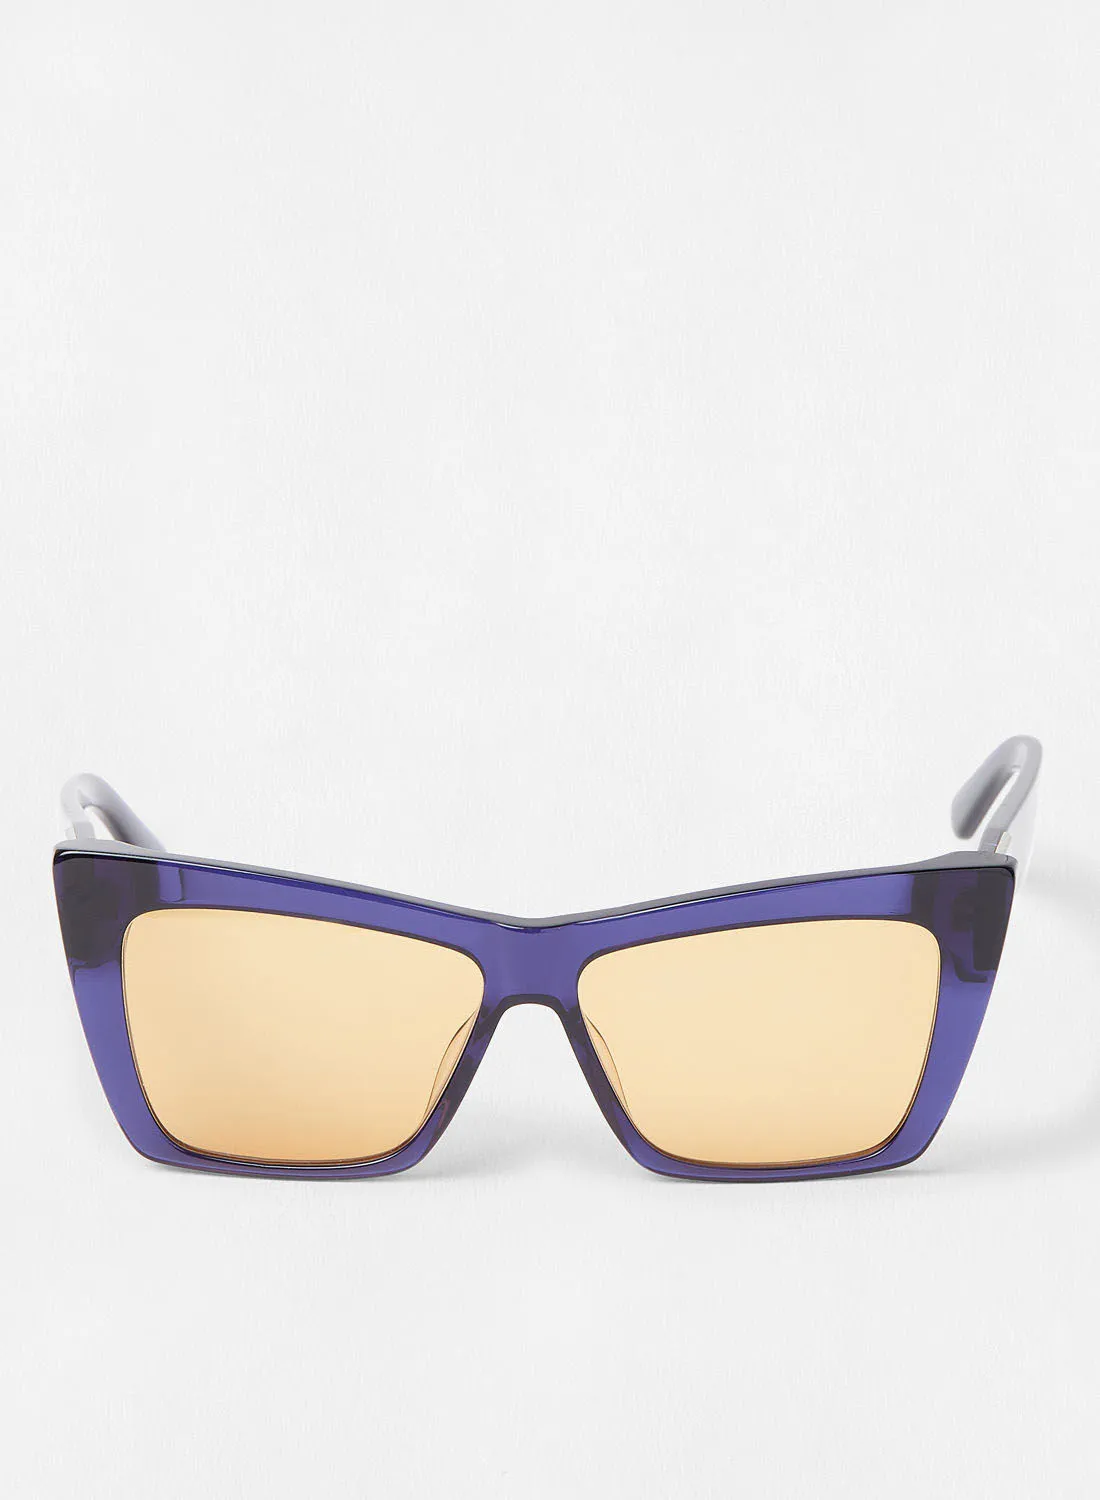 Karl Lagerfeld Women's UV Protection Rectangular Sunglasses - Lens Size: 56 mm